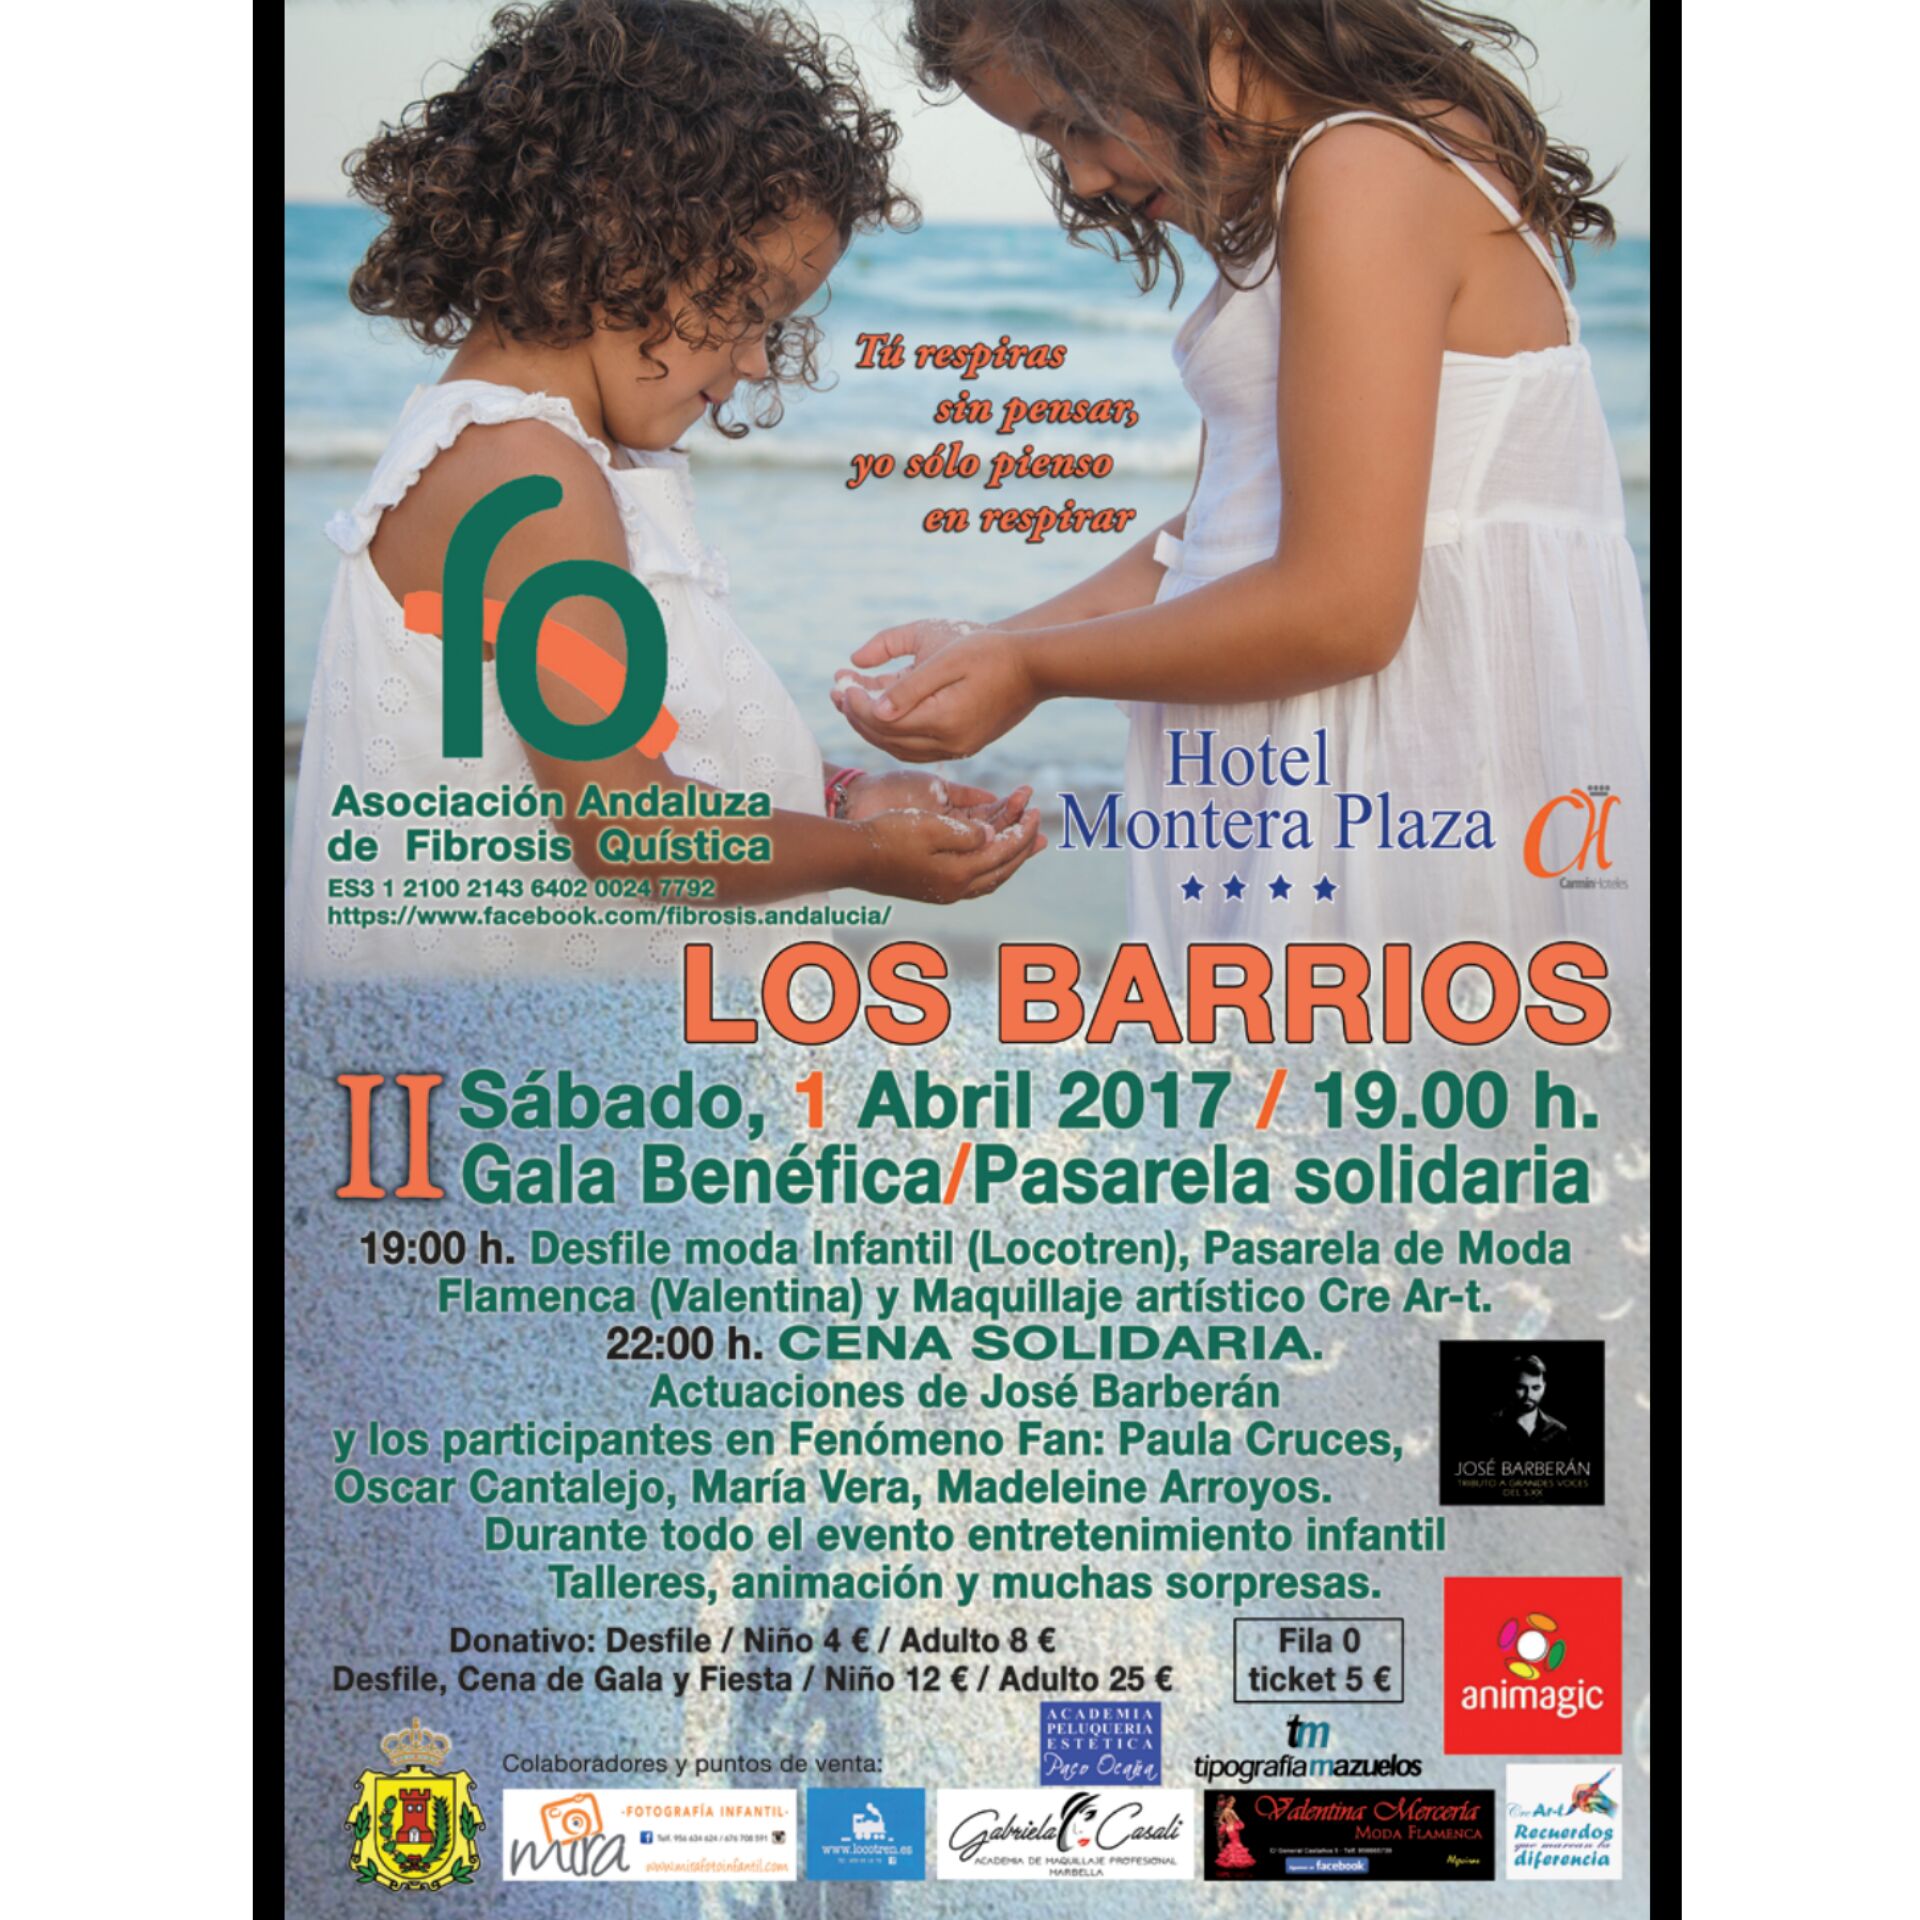 II Gala Benéfica Y Pasarela Solidaria en Los Barrios (Cádiz)